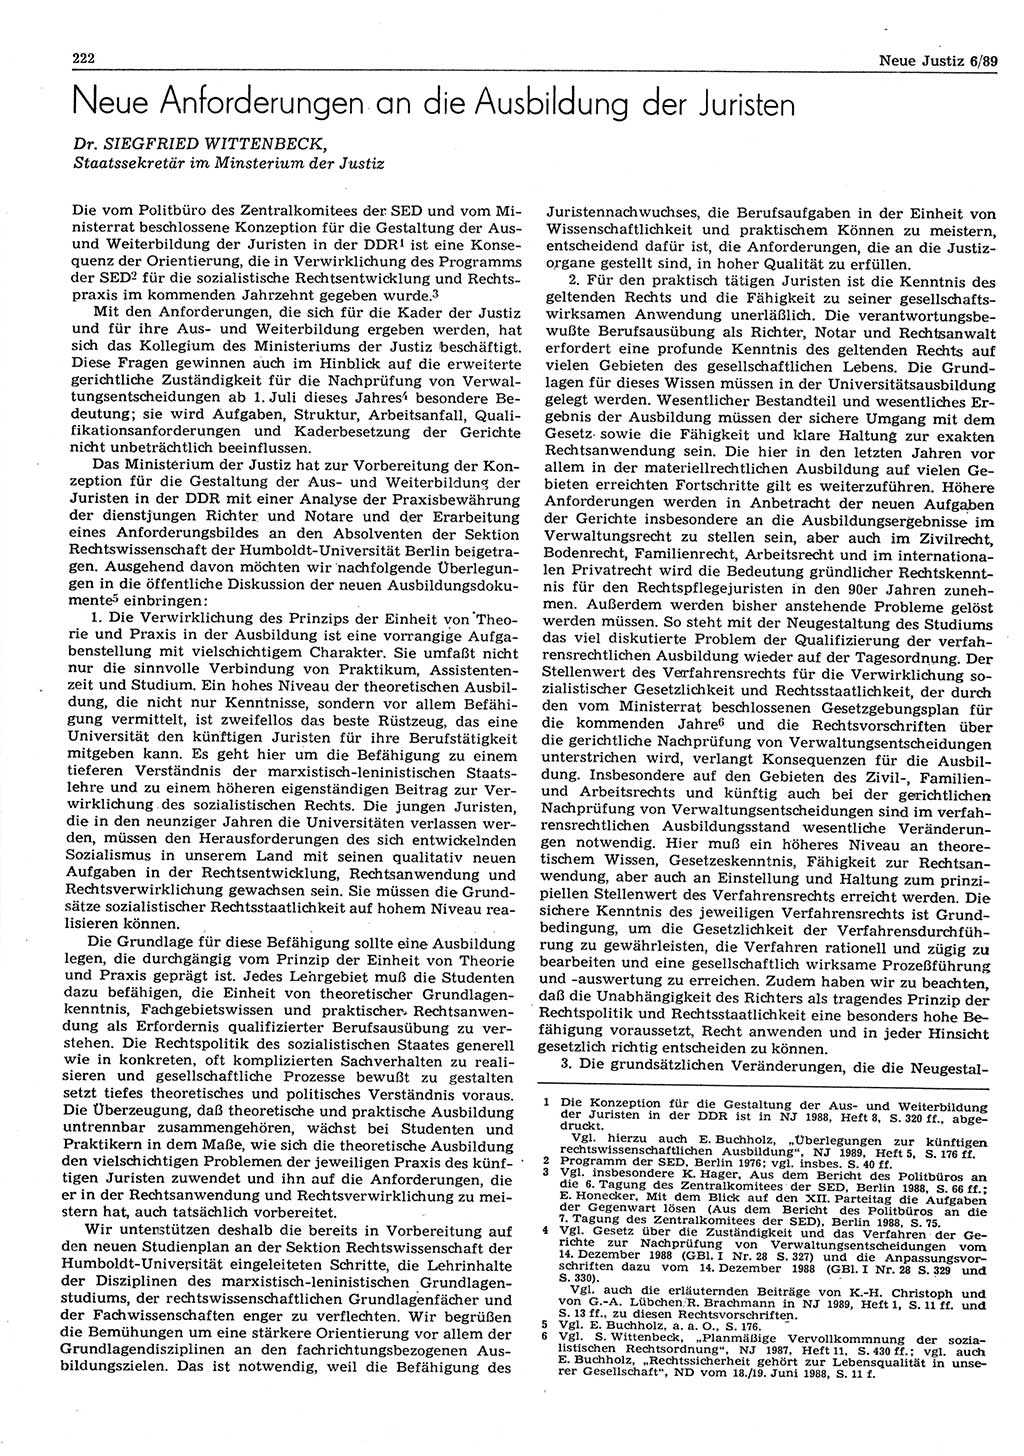 Neue Justiz (NJ), Zeitschrift für sozialistisches Recht und Gesetzlichkeit [Deutsche Demokratische Republik (DDR)], 43. Jahrgang 1989, Seite 222 (NJ DDR 1989, S. 222)